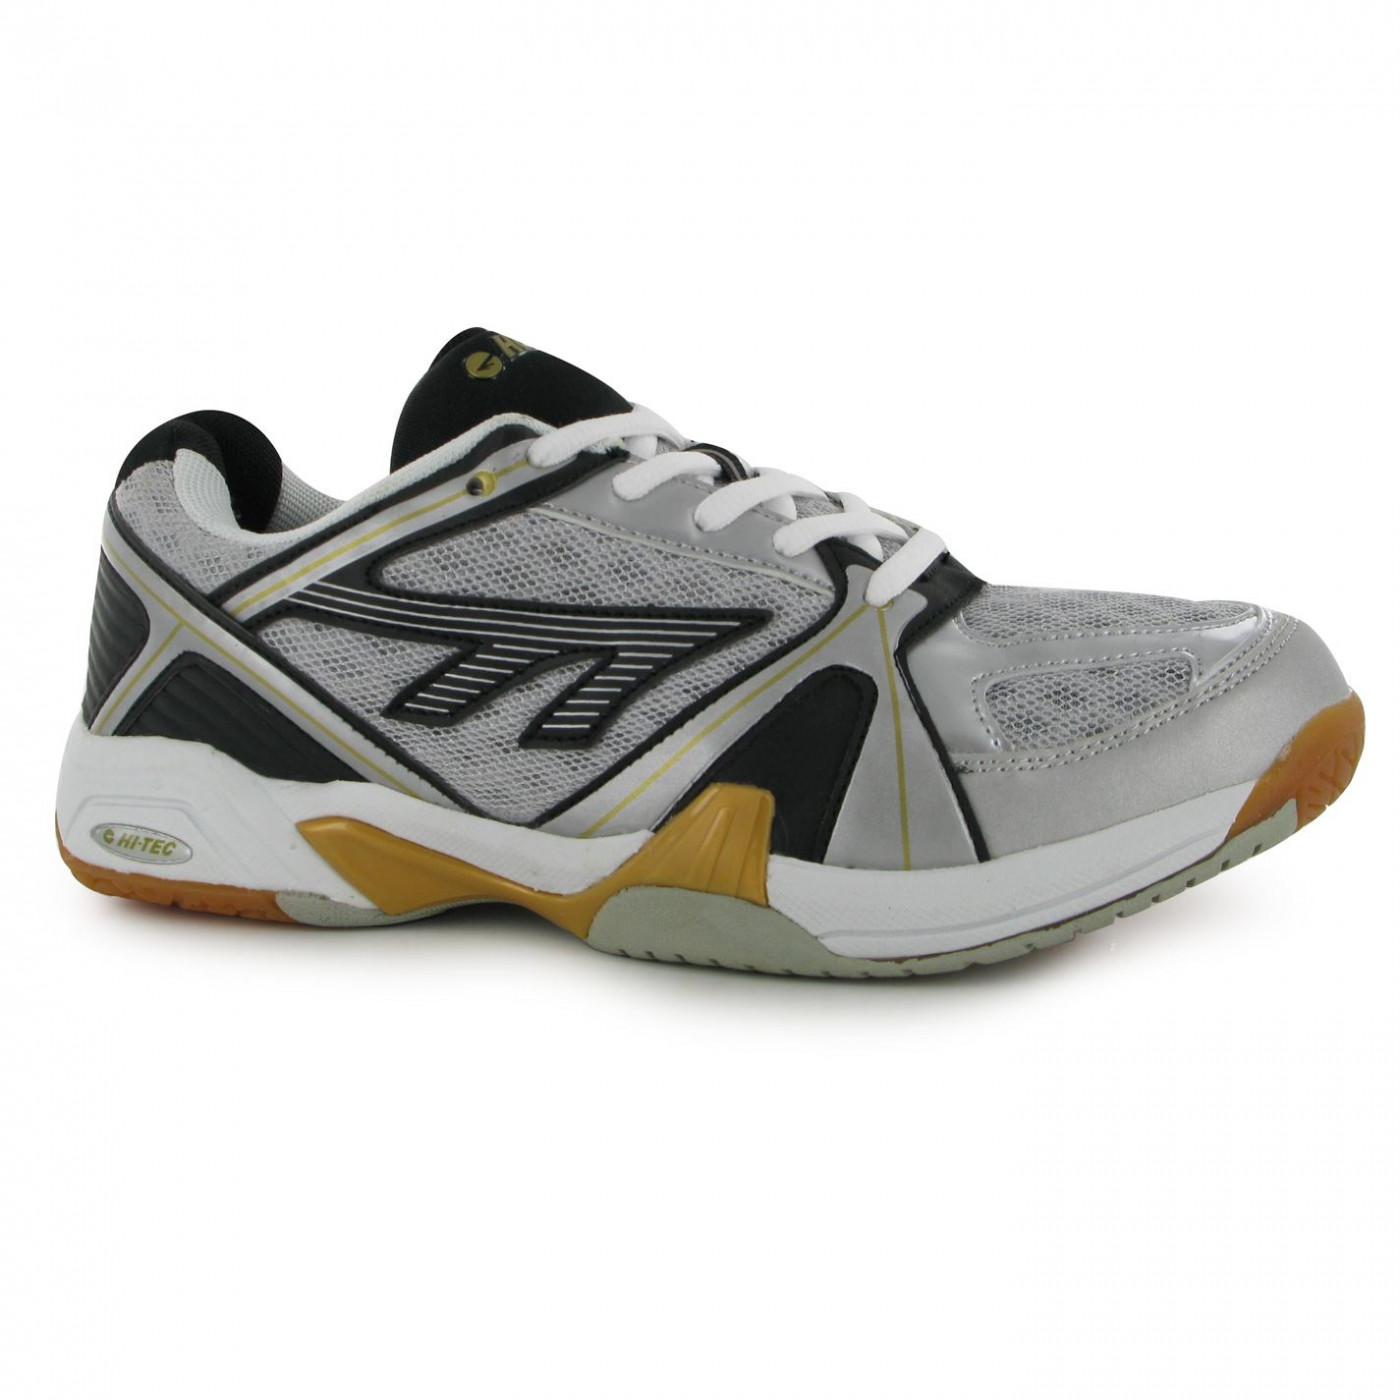 lightest tennis shoes 219